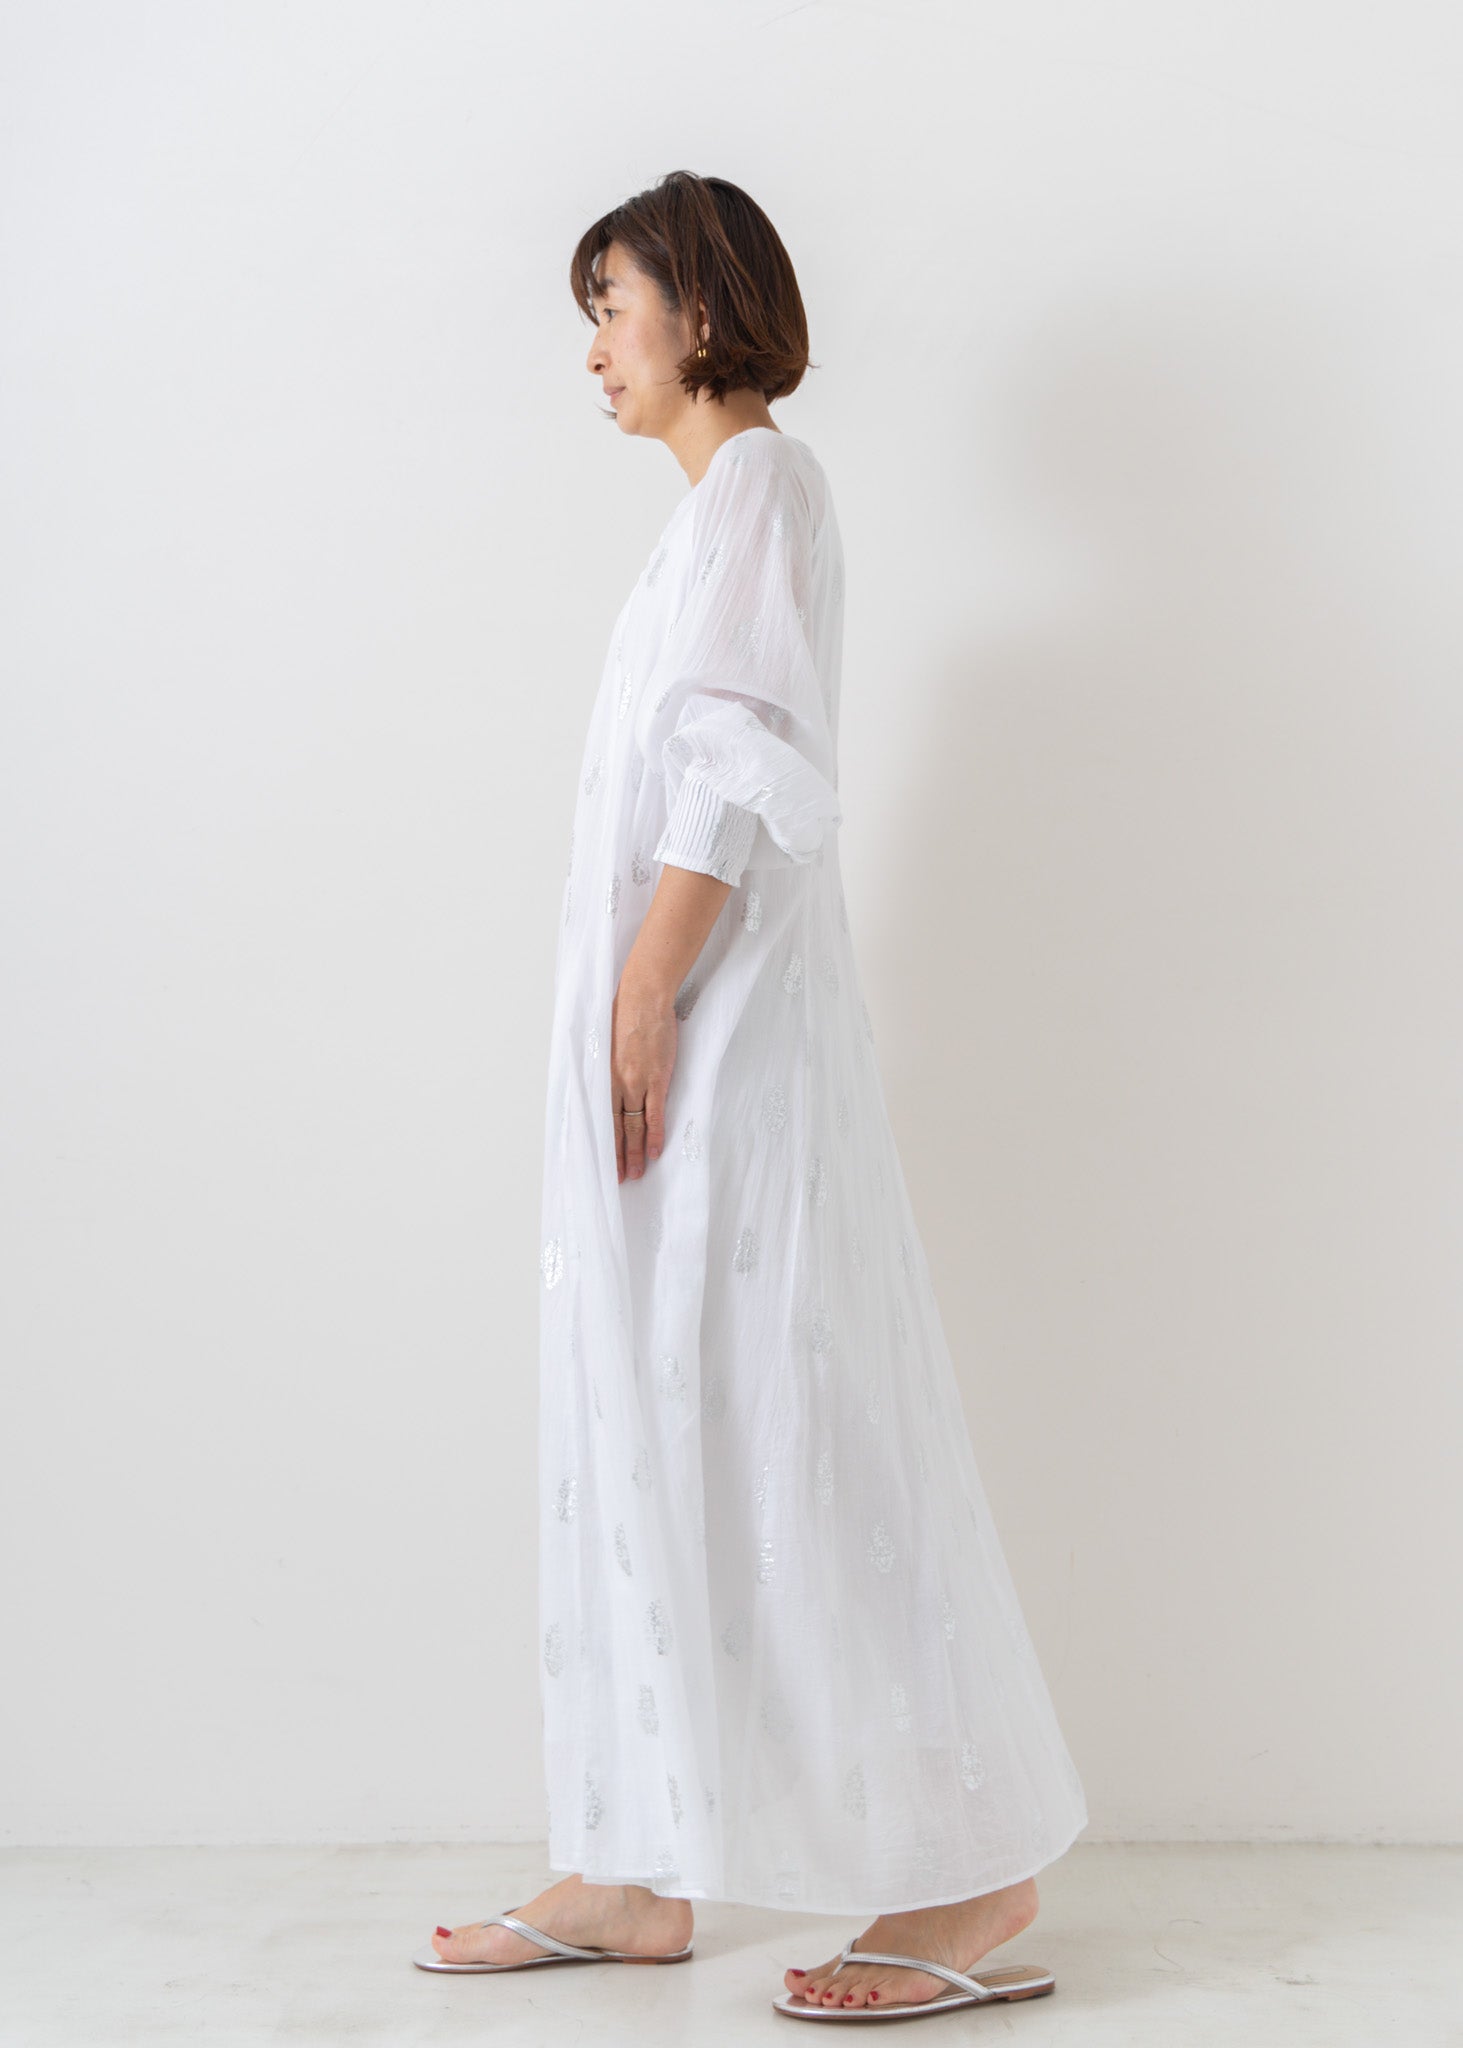 【予約受付中】Cotton Voile Foil Flower Print Sleeve Dress